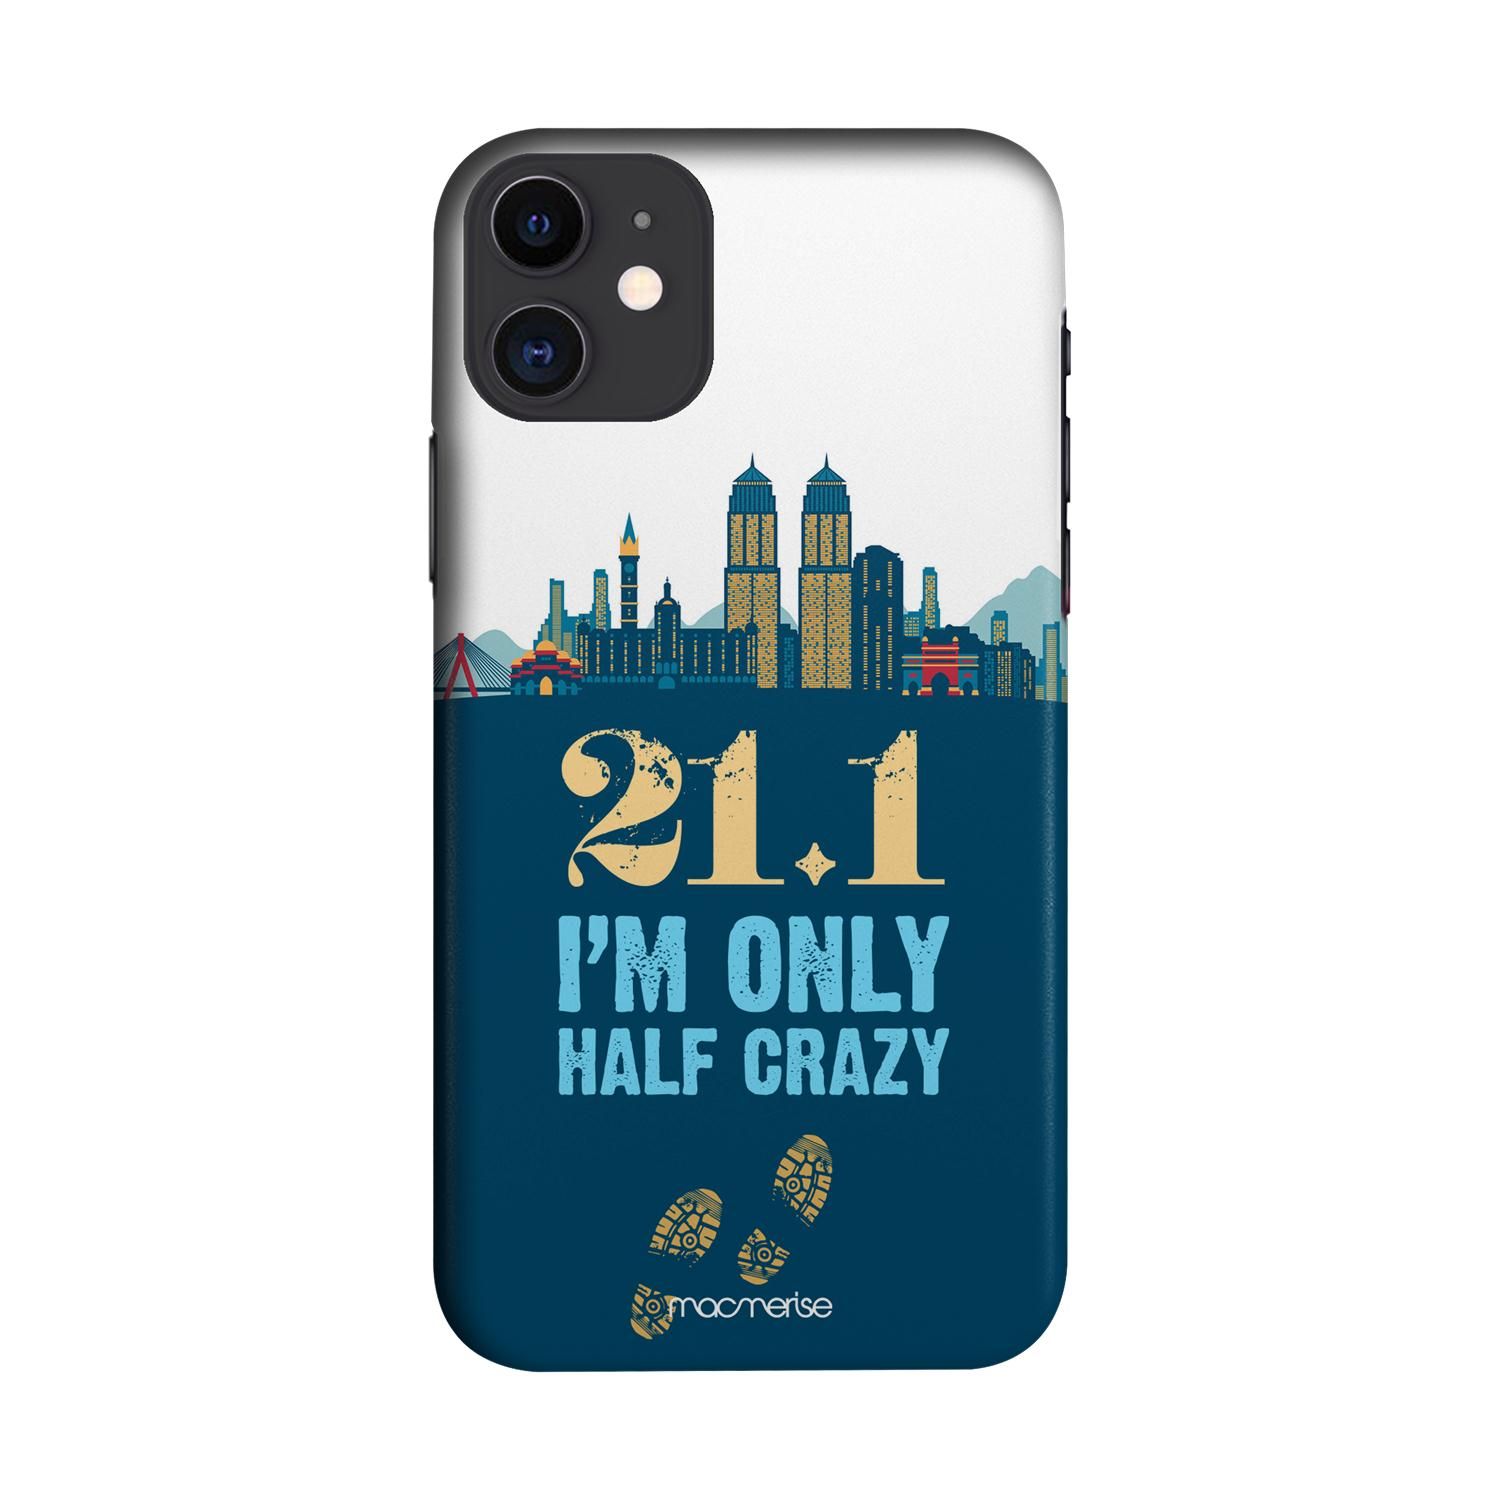 Buy Half Crazy - Sleek Phone Case for iPhone 11 Online